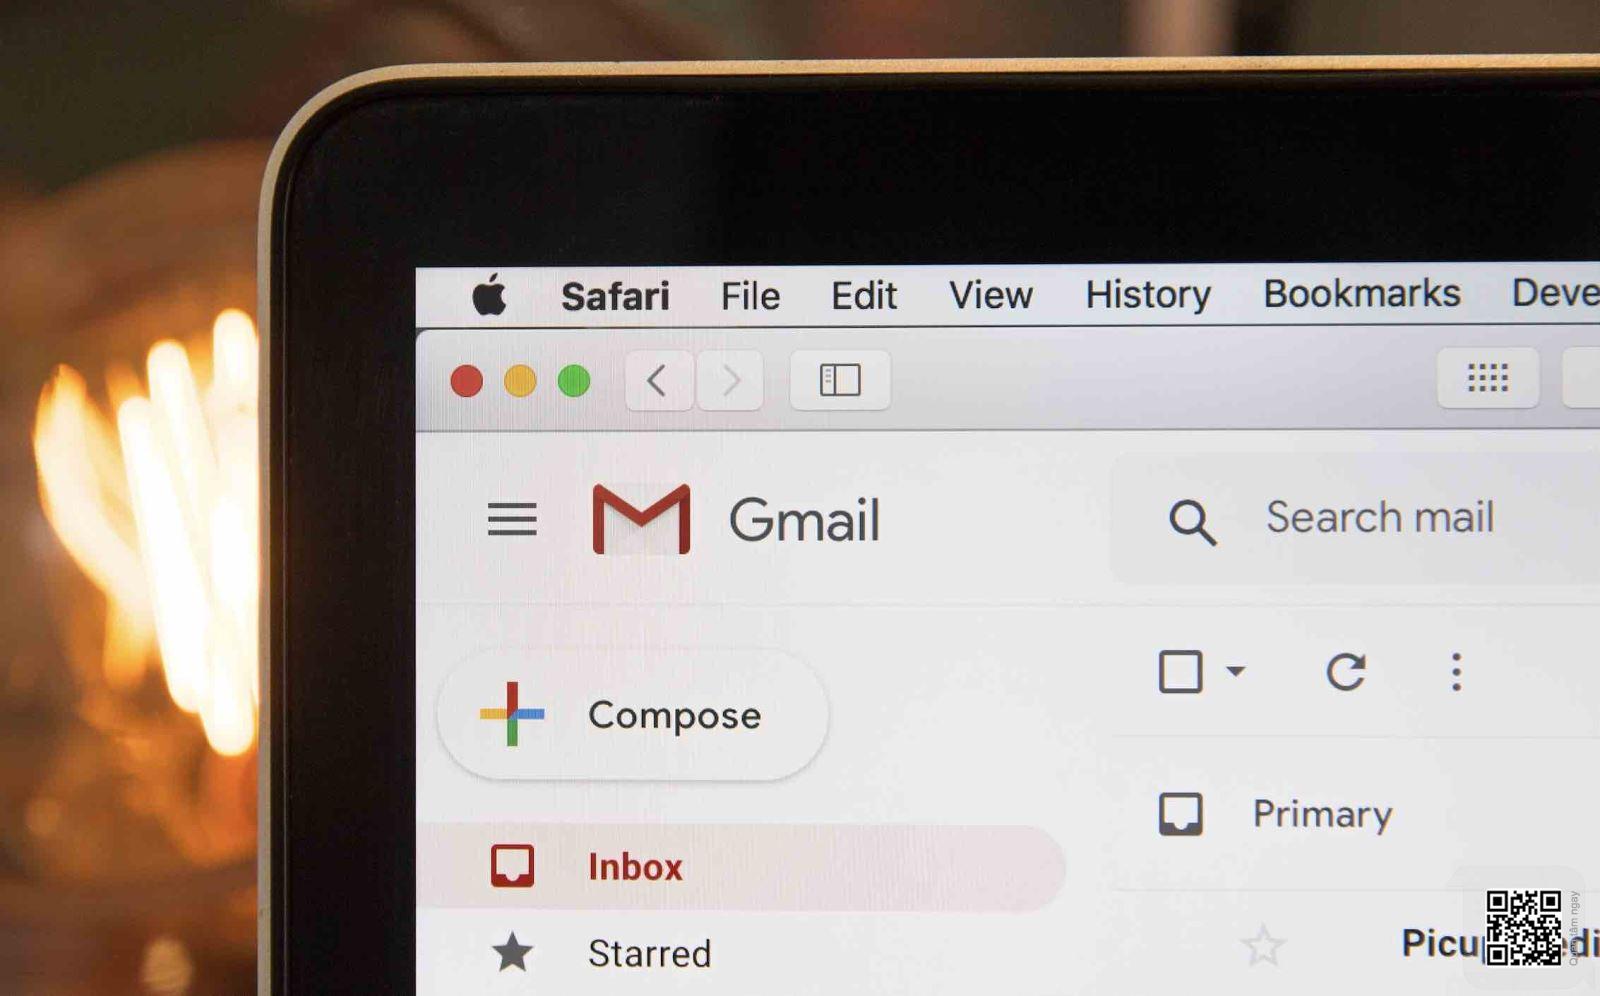 Kiểm tra cấu hình DKIM bằng cách gửi mail đến Gmail